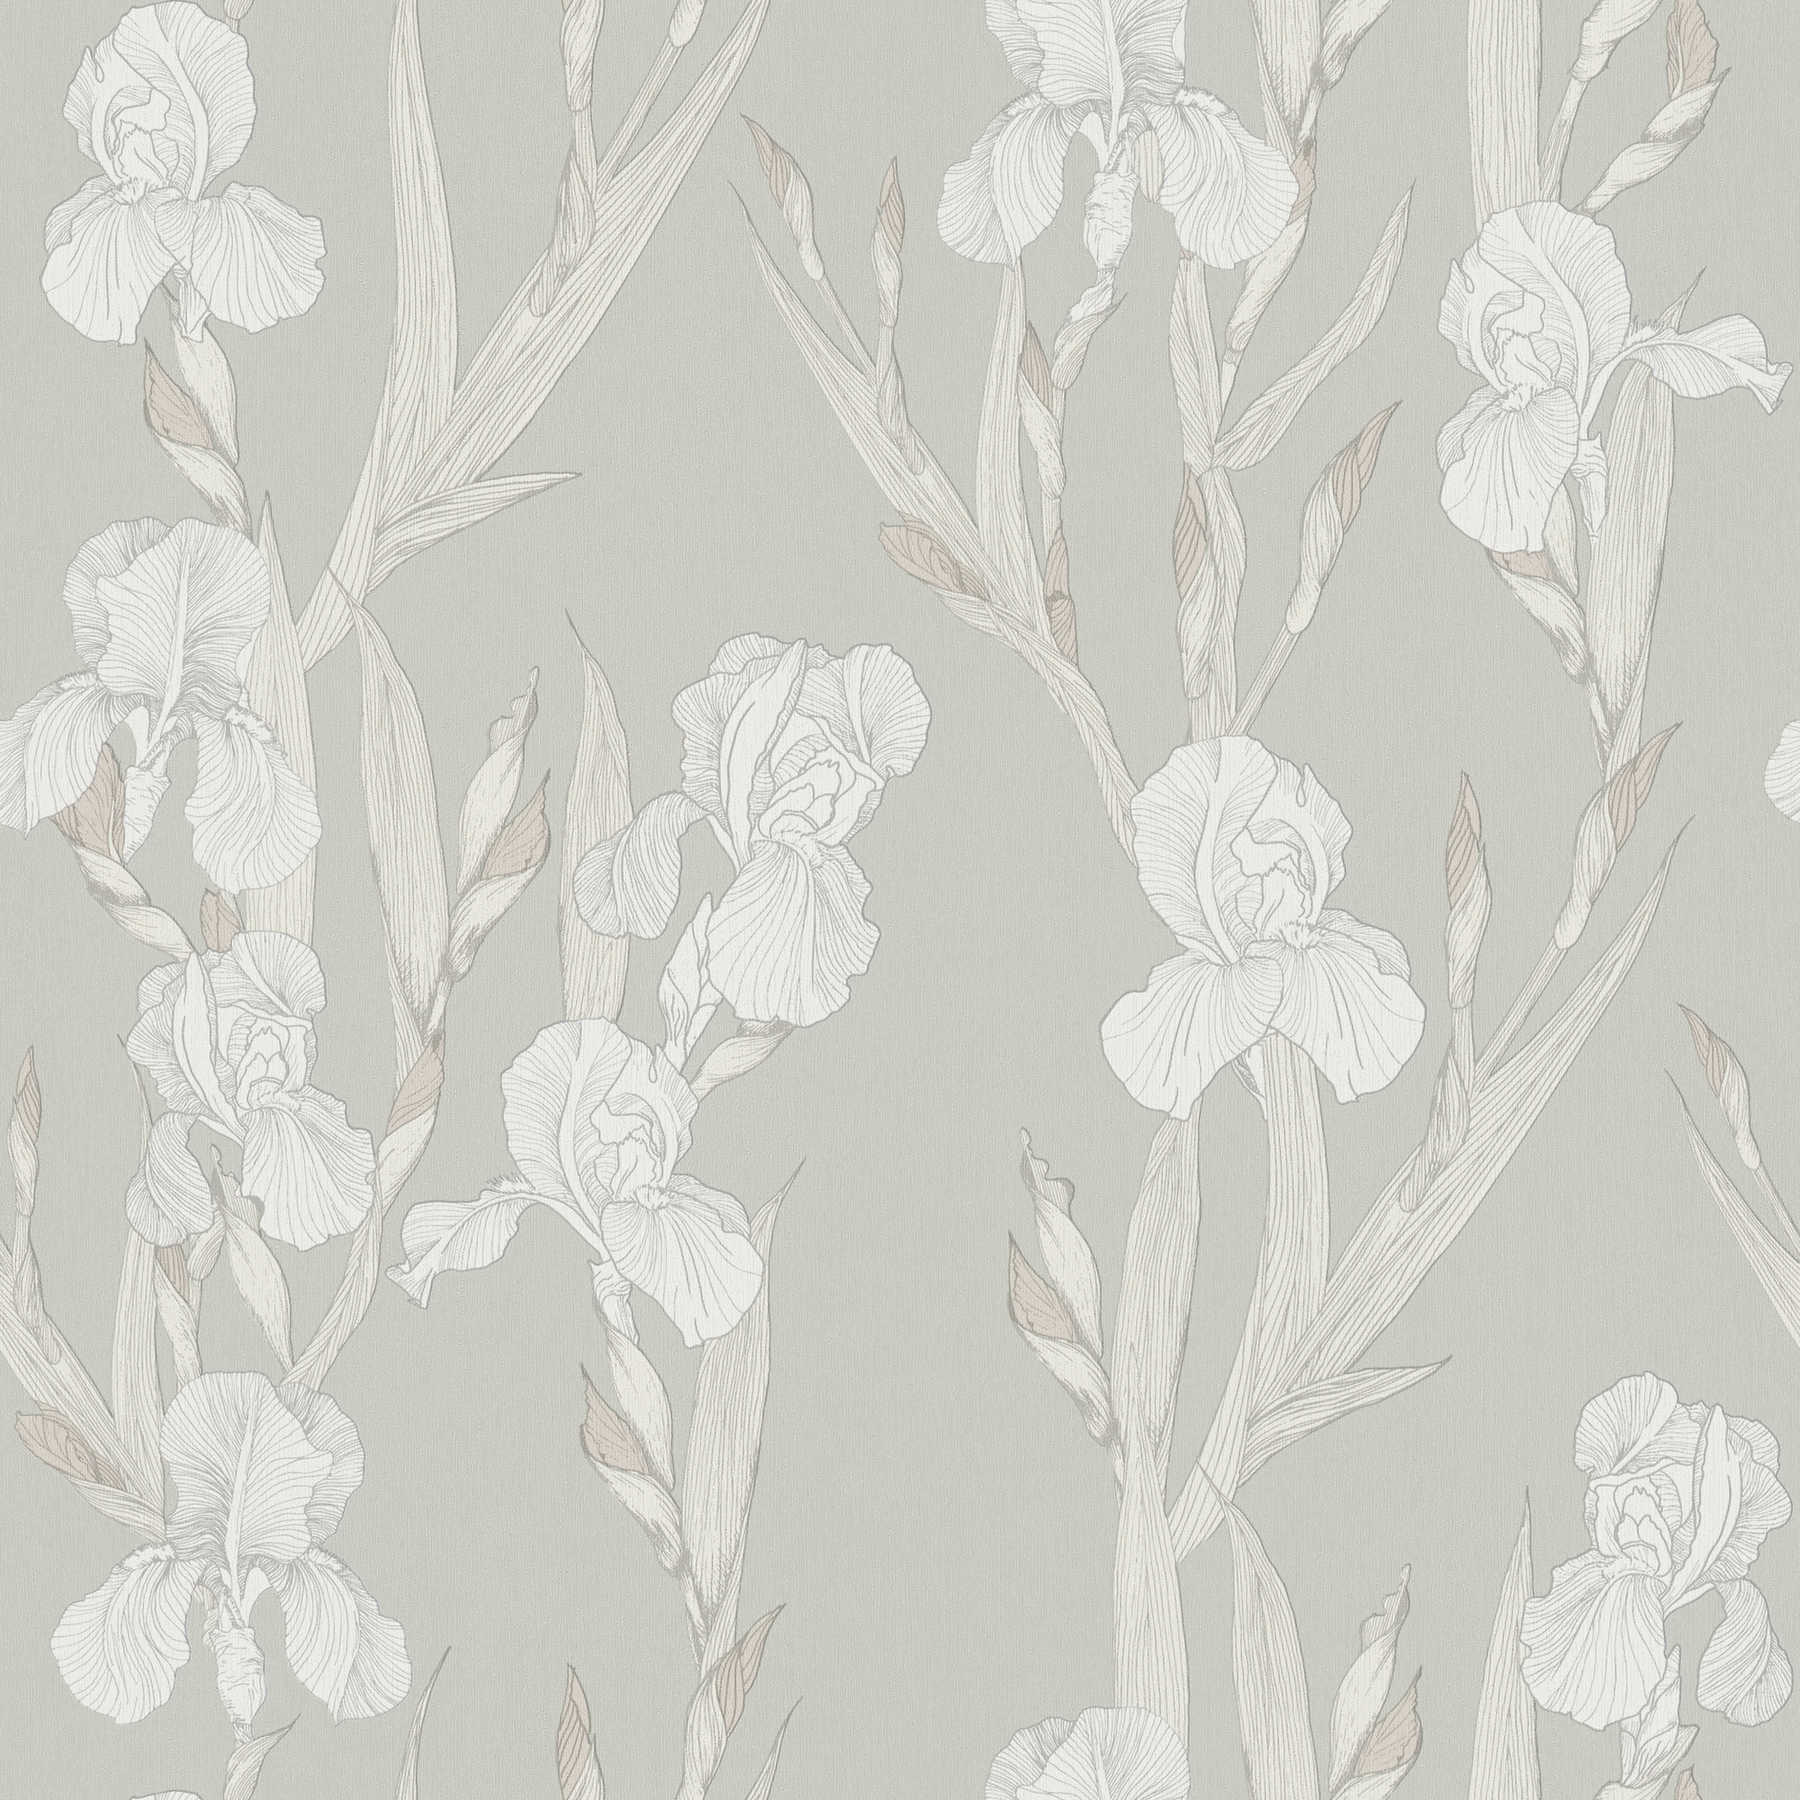 Blumentapete stilisiert, Blütenranken & modernes Design – Grau, Weiß
